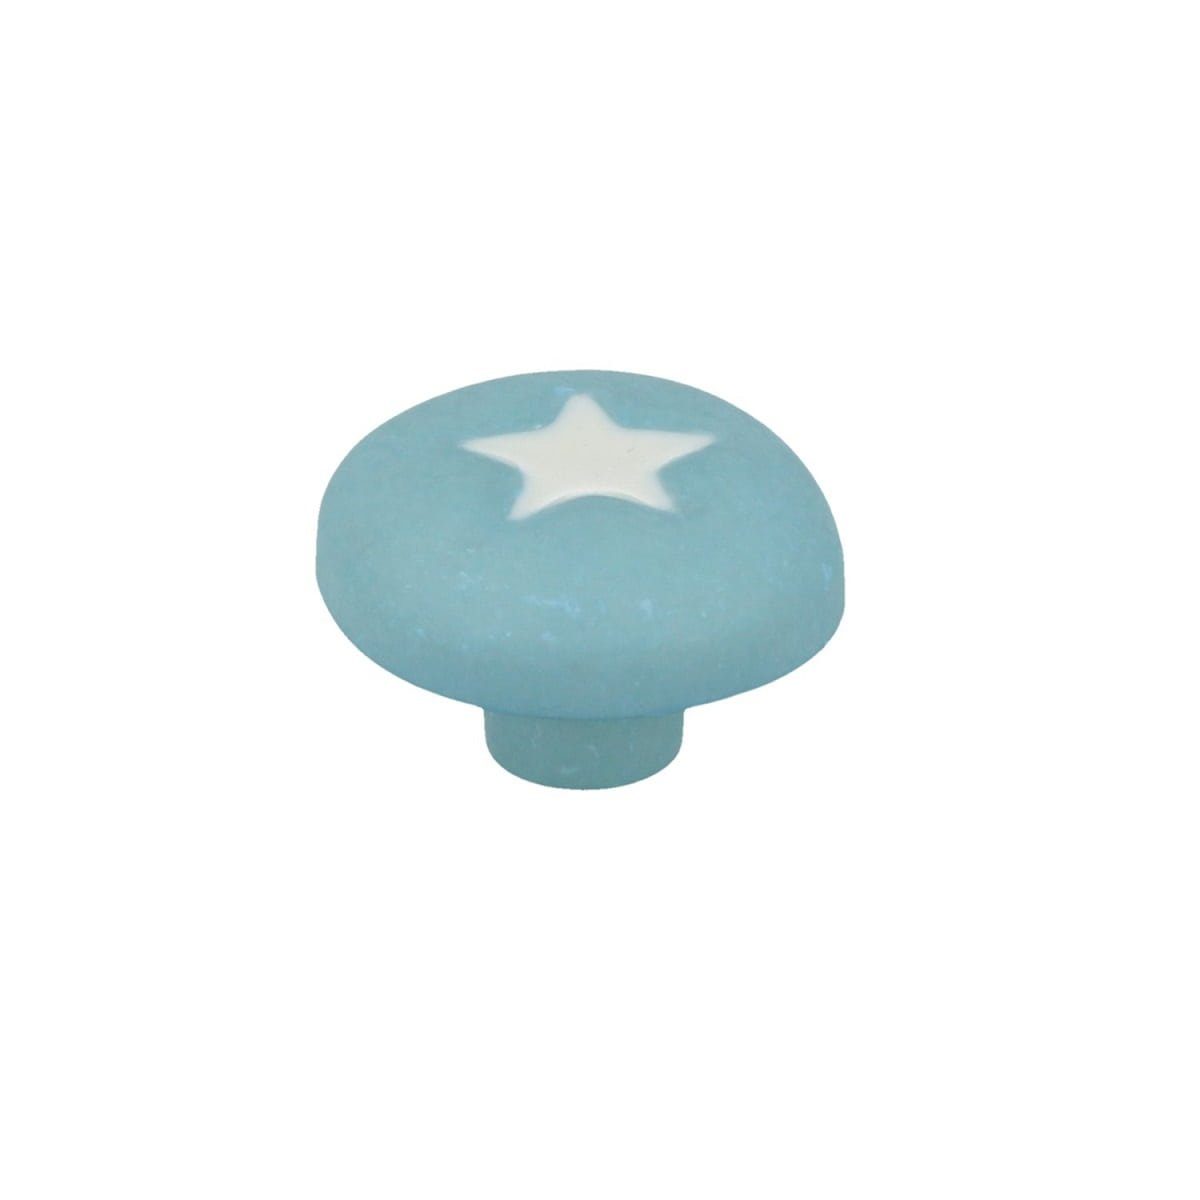 Blauer MS Beschläge Pilz mit Kinderzimmer Möbelknopf Stern Möbelknopf